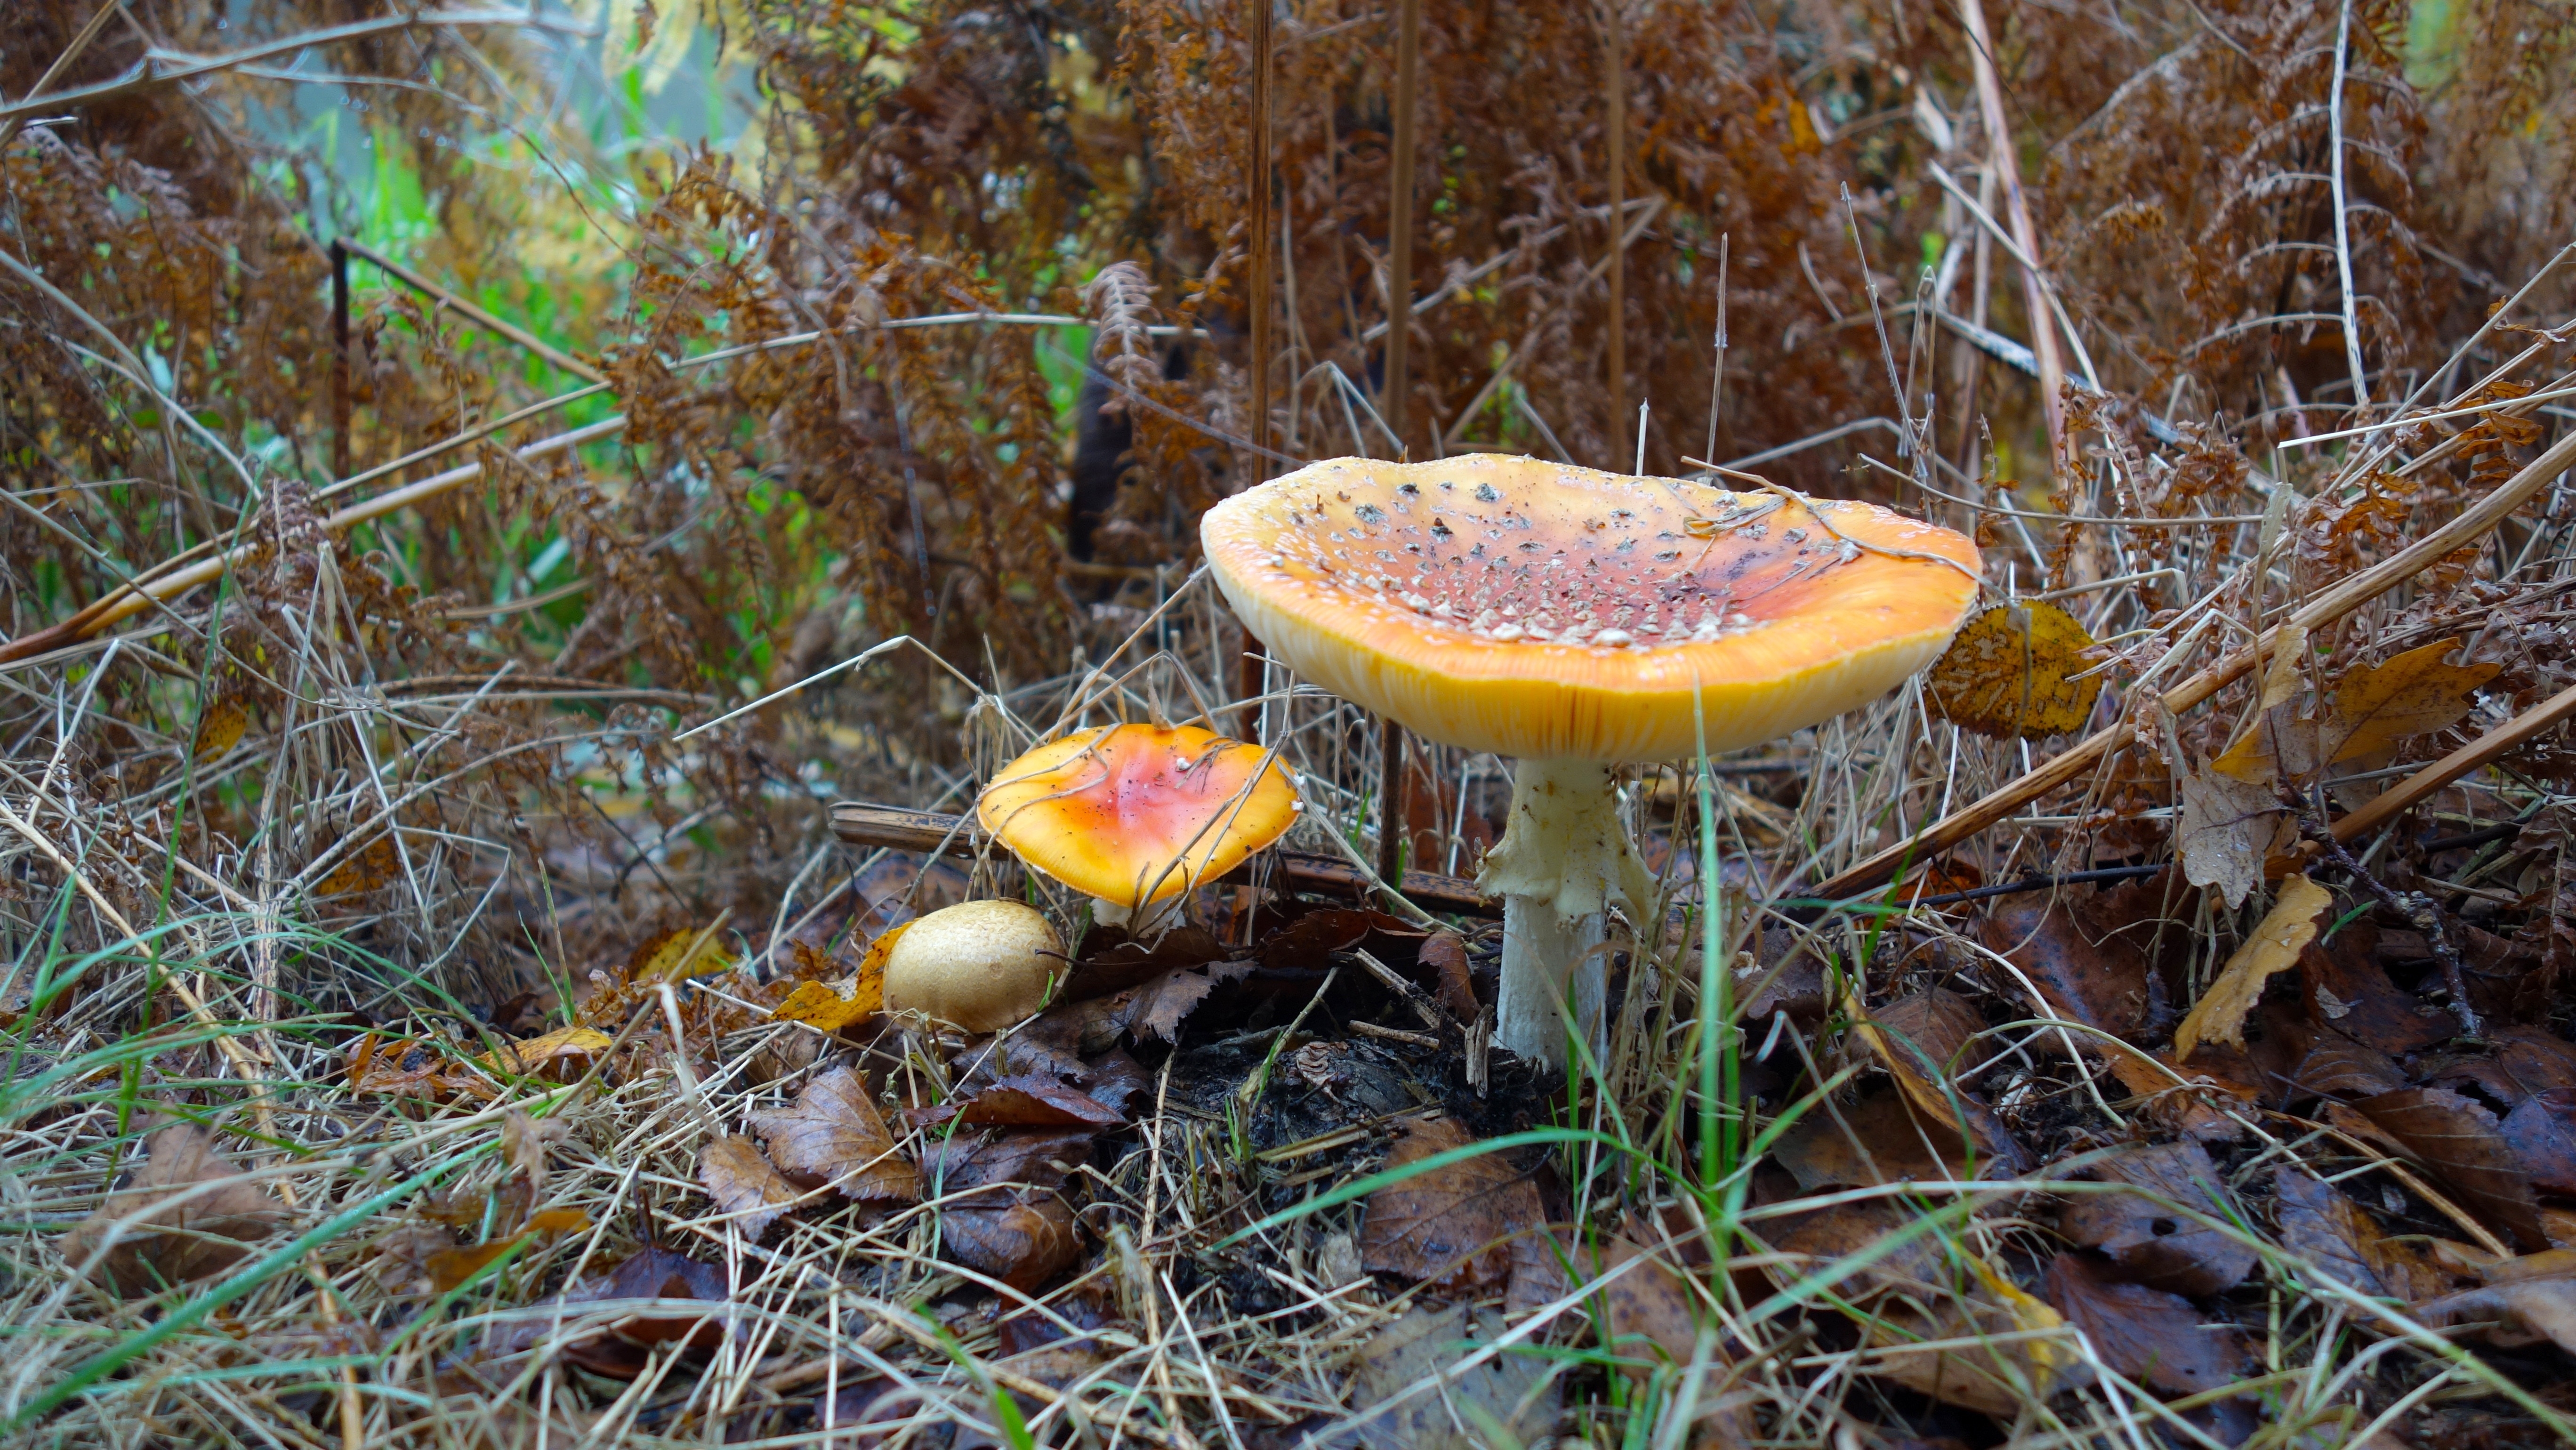 Free photo Autumn mushroom, some kind of toadstool